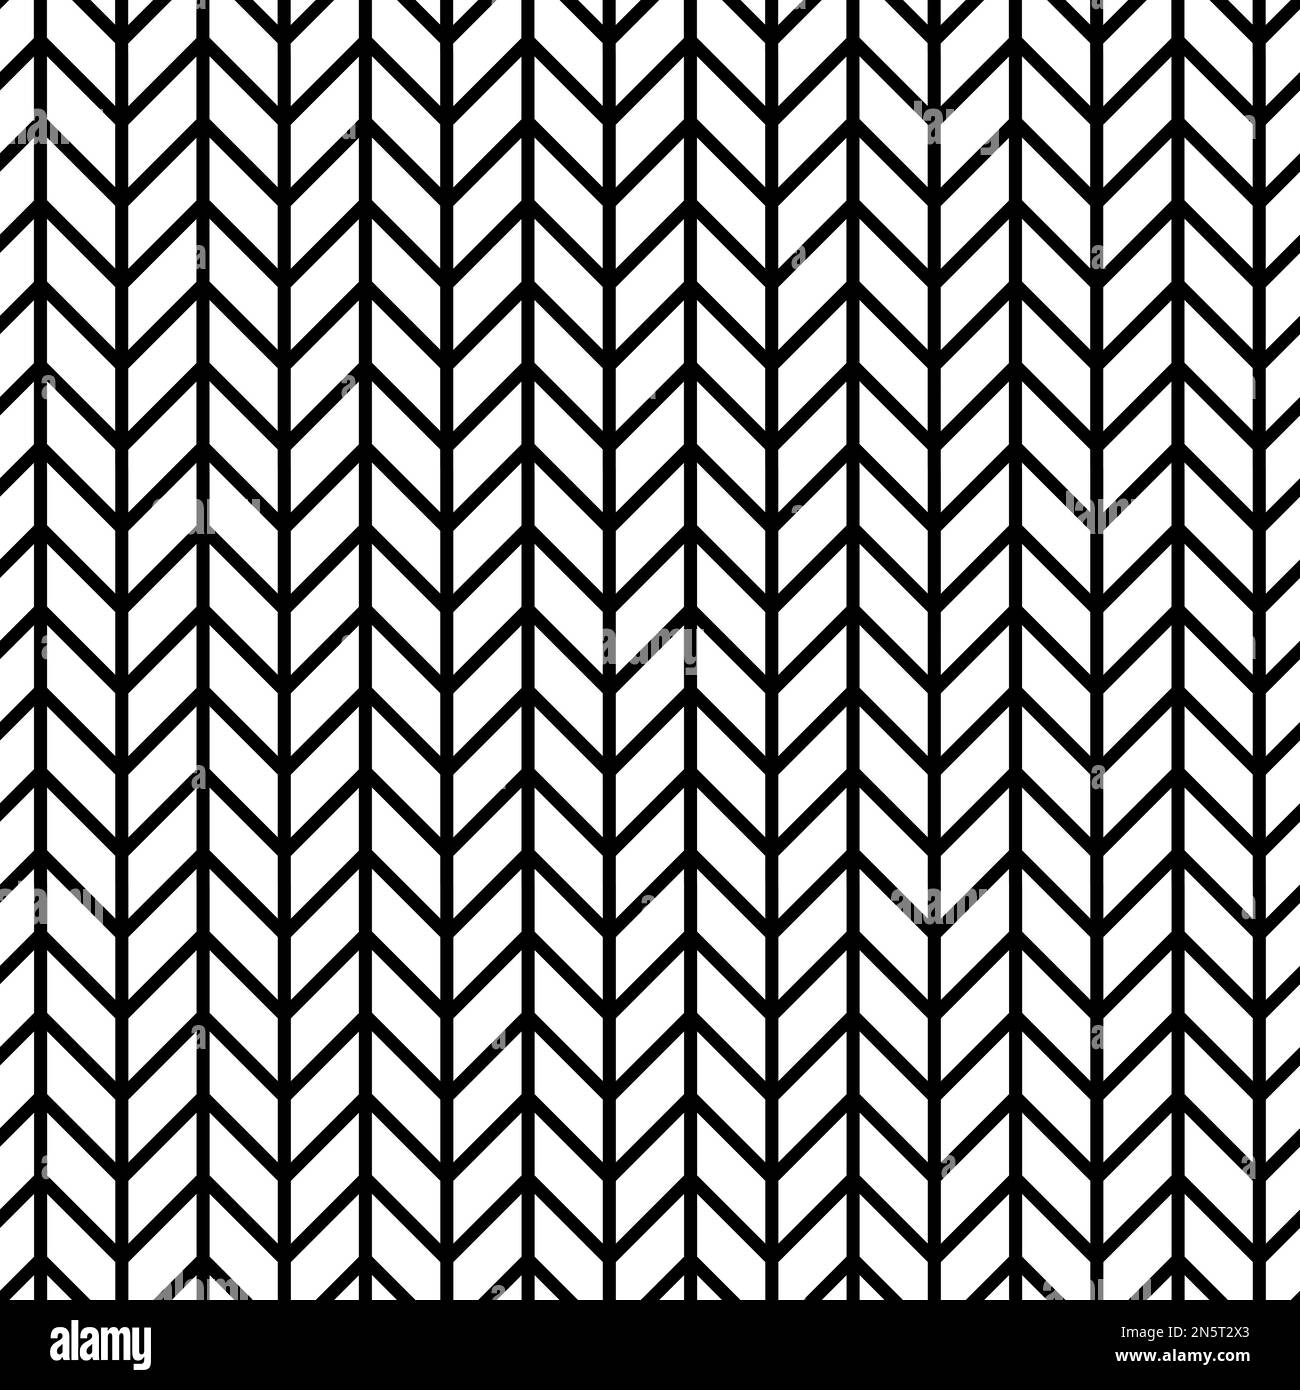 Nahtlose monochrome Vektorgrafik, bestehend aus parallelen vertikalen Linien, die von einer Reihe von Wellenlinien, die eine Reihe von Pfeilen bilden, geschnitten werden Stock Vektor